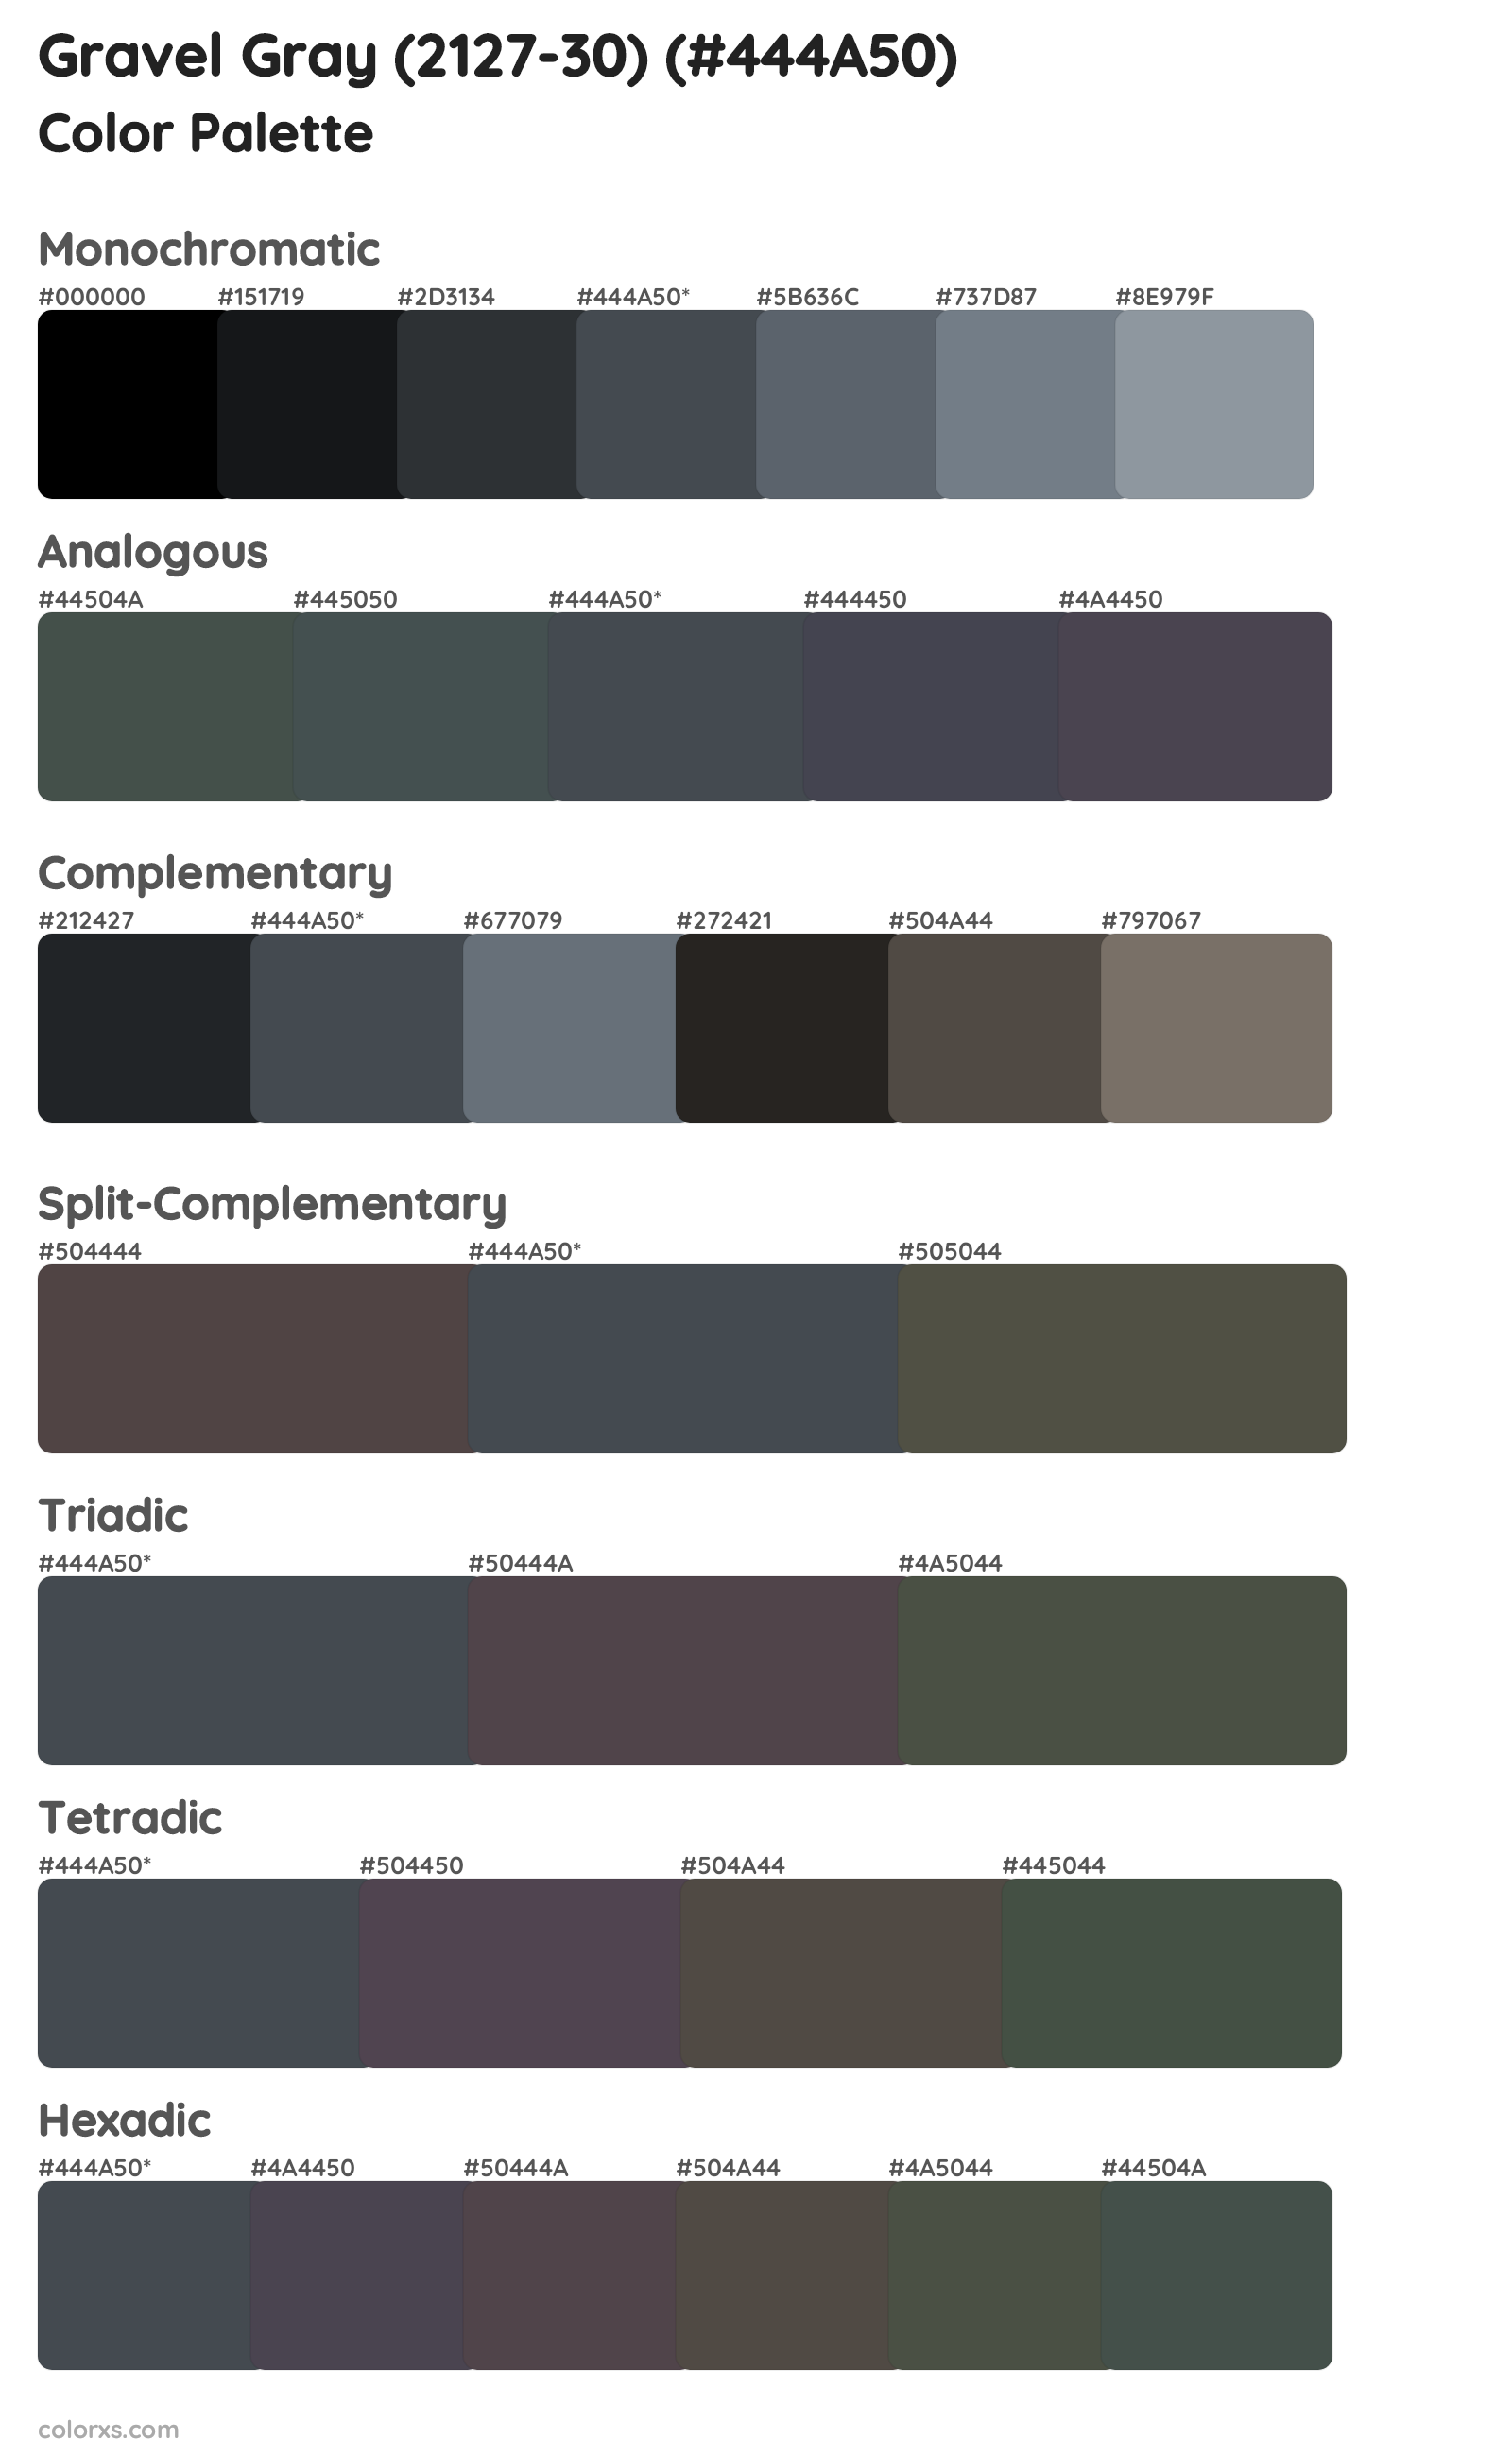 Gravel Gray (2127-30) Color Scheme Palettes